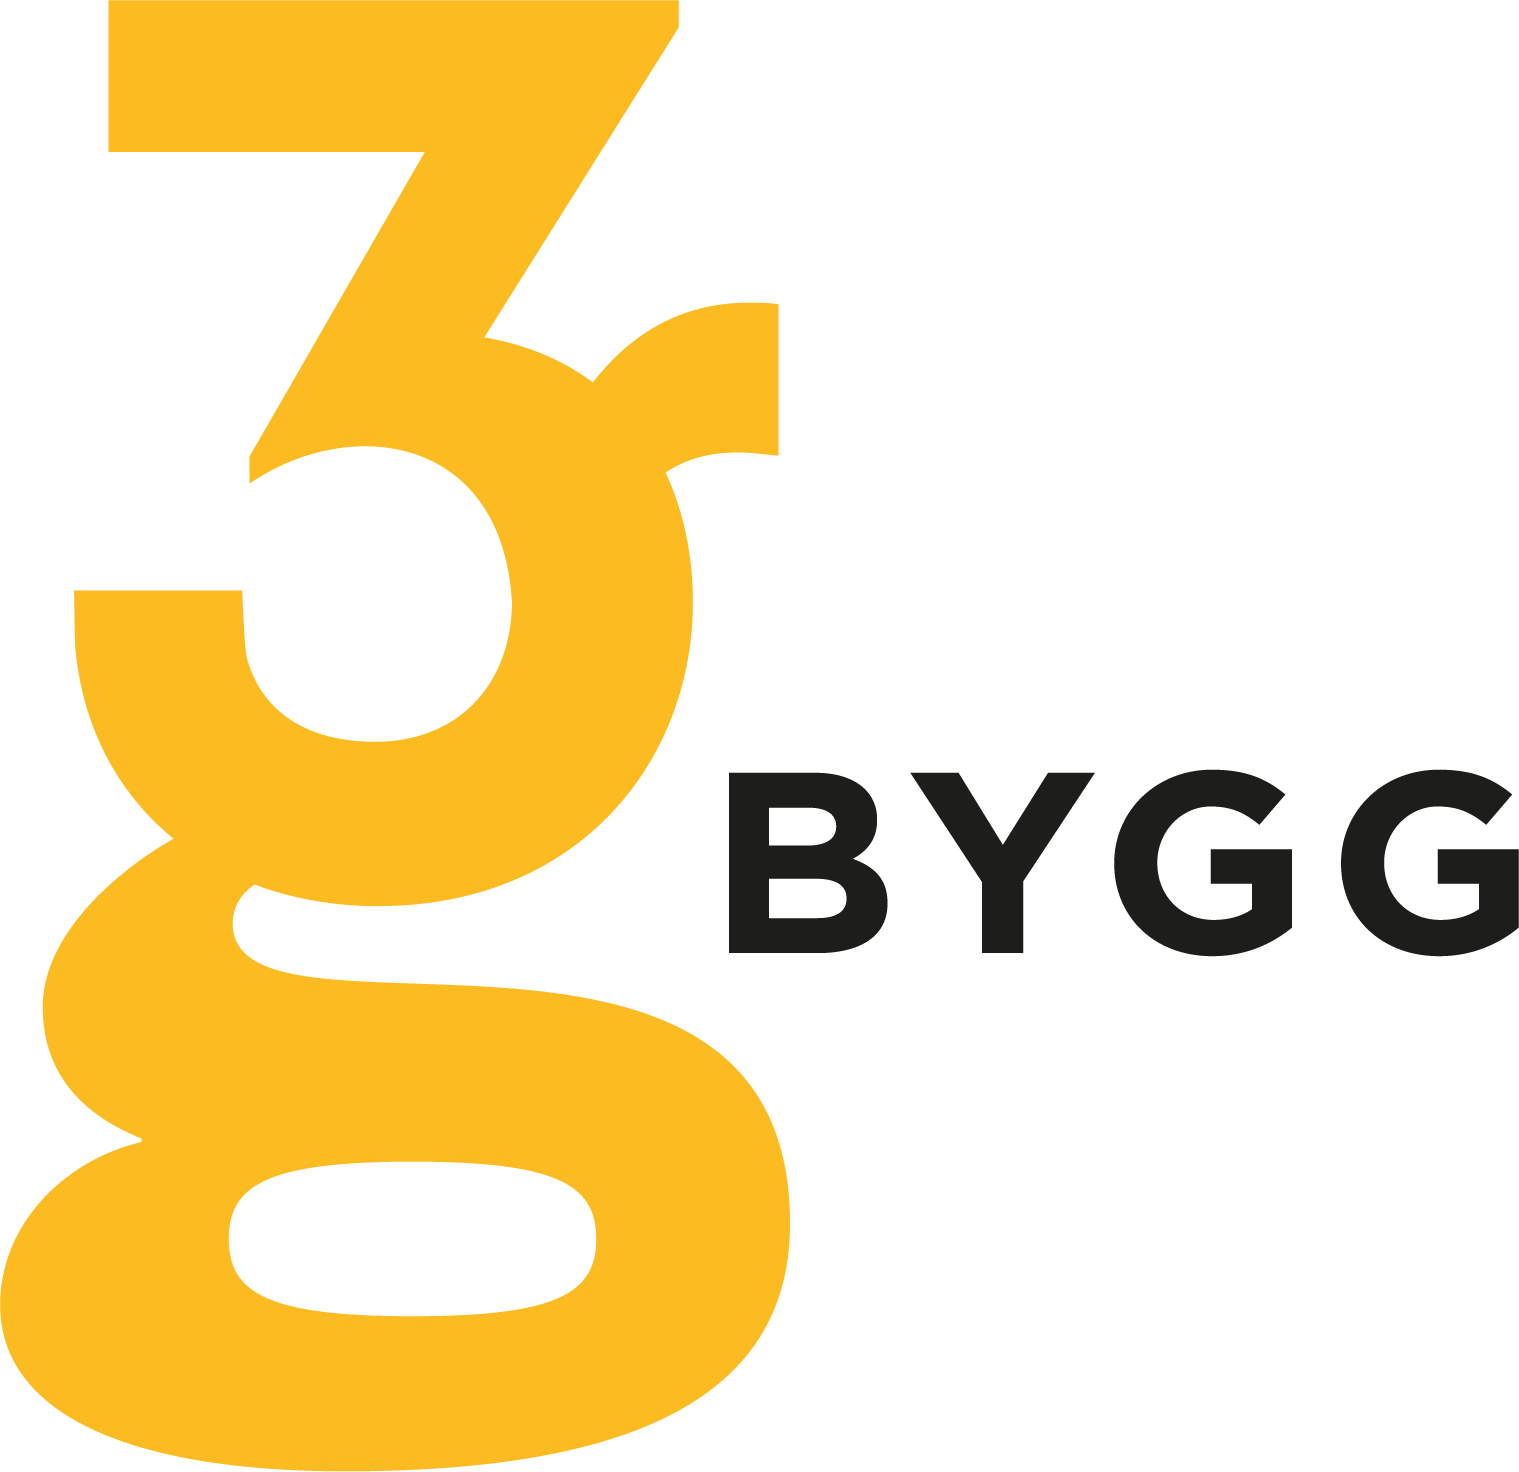 3g BYGG